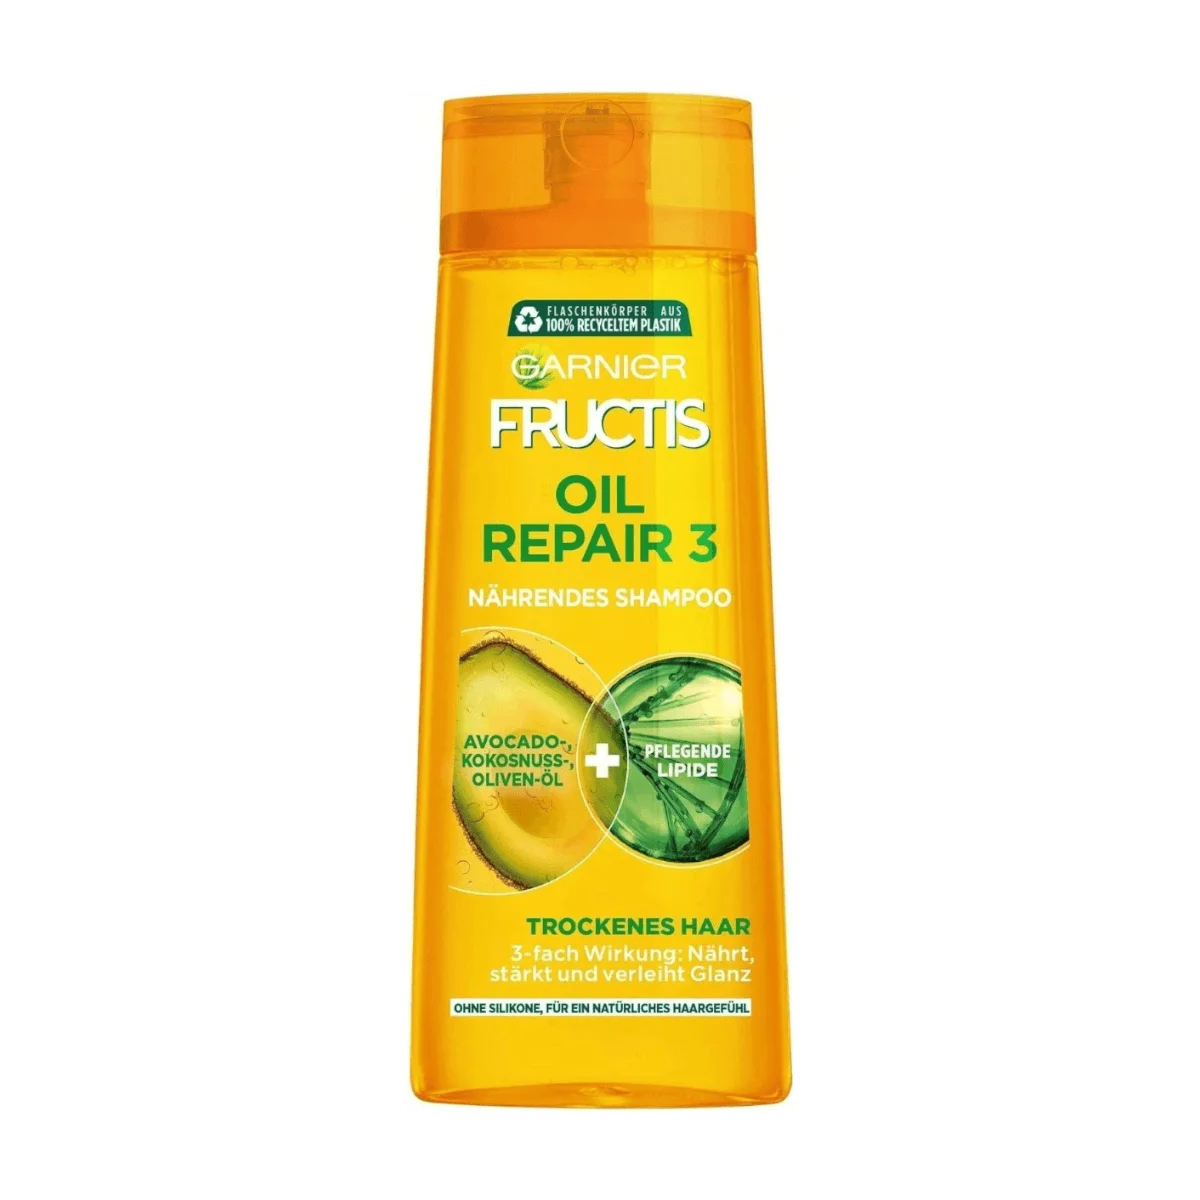 Shampoo Nährendes Fructis 3 Repair Garnier Oil